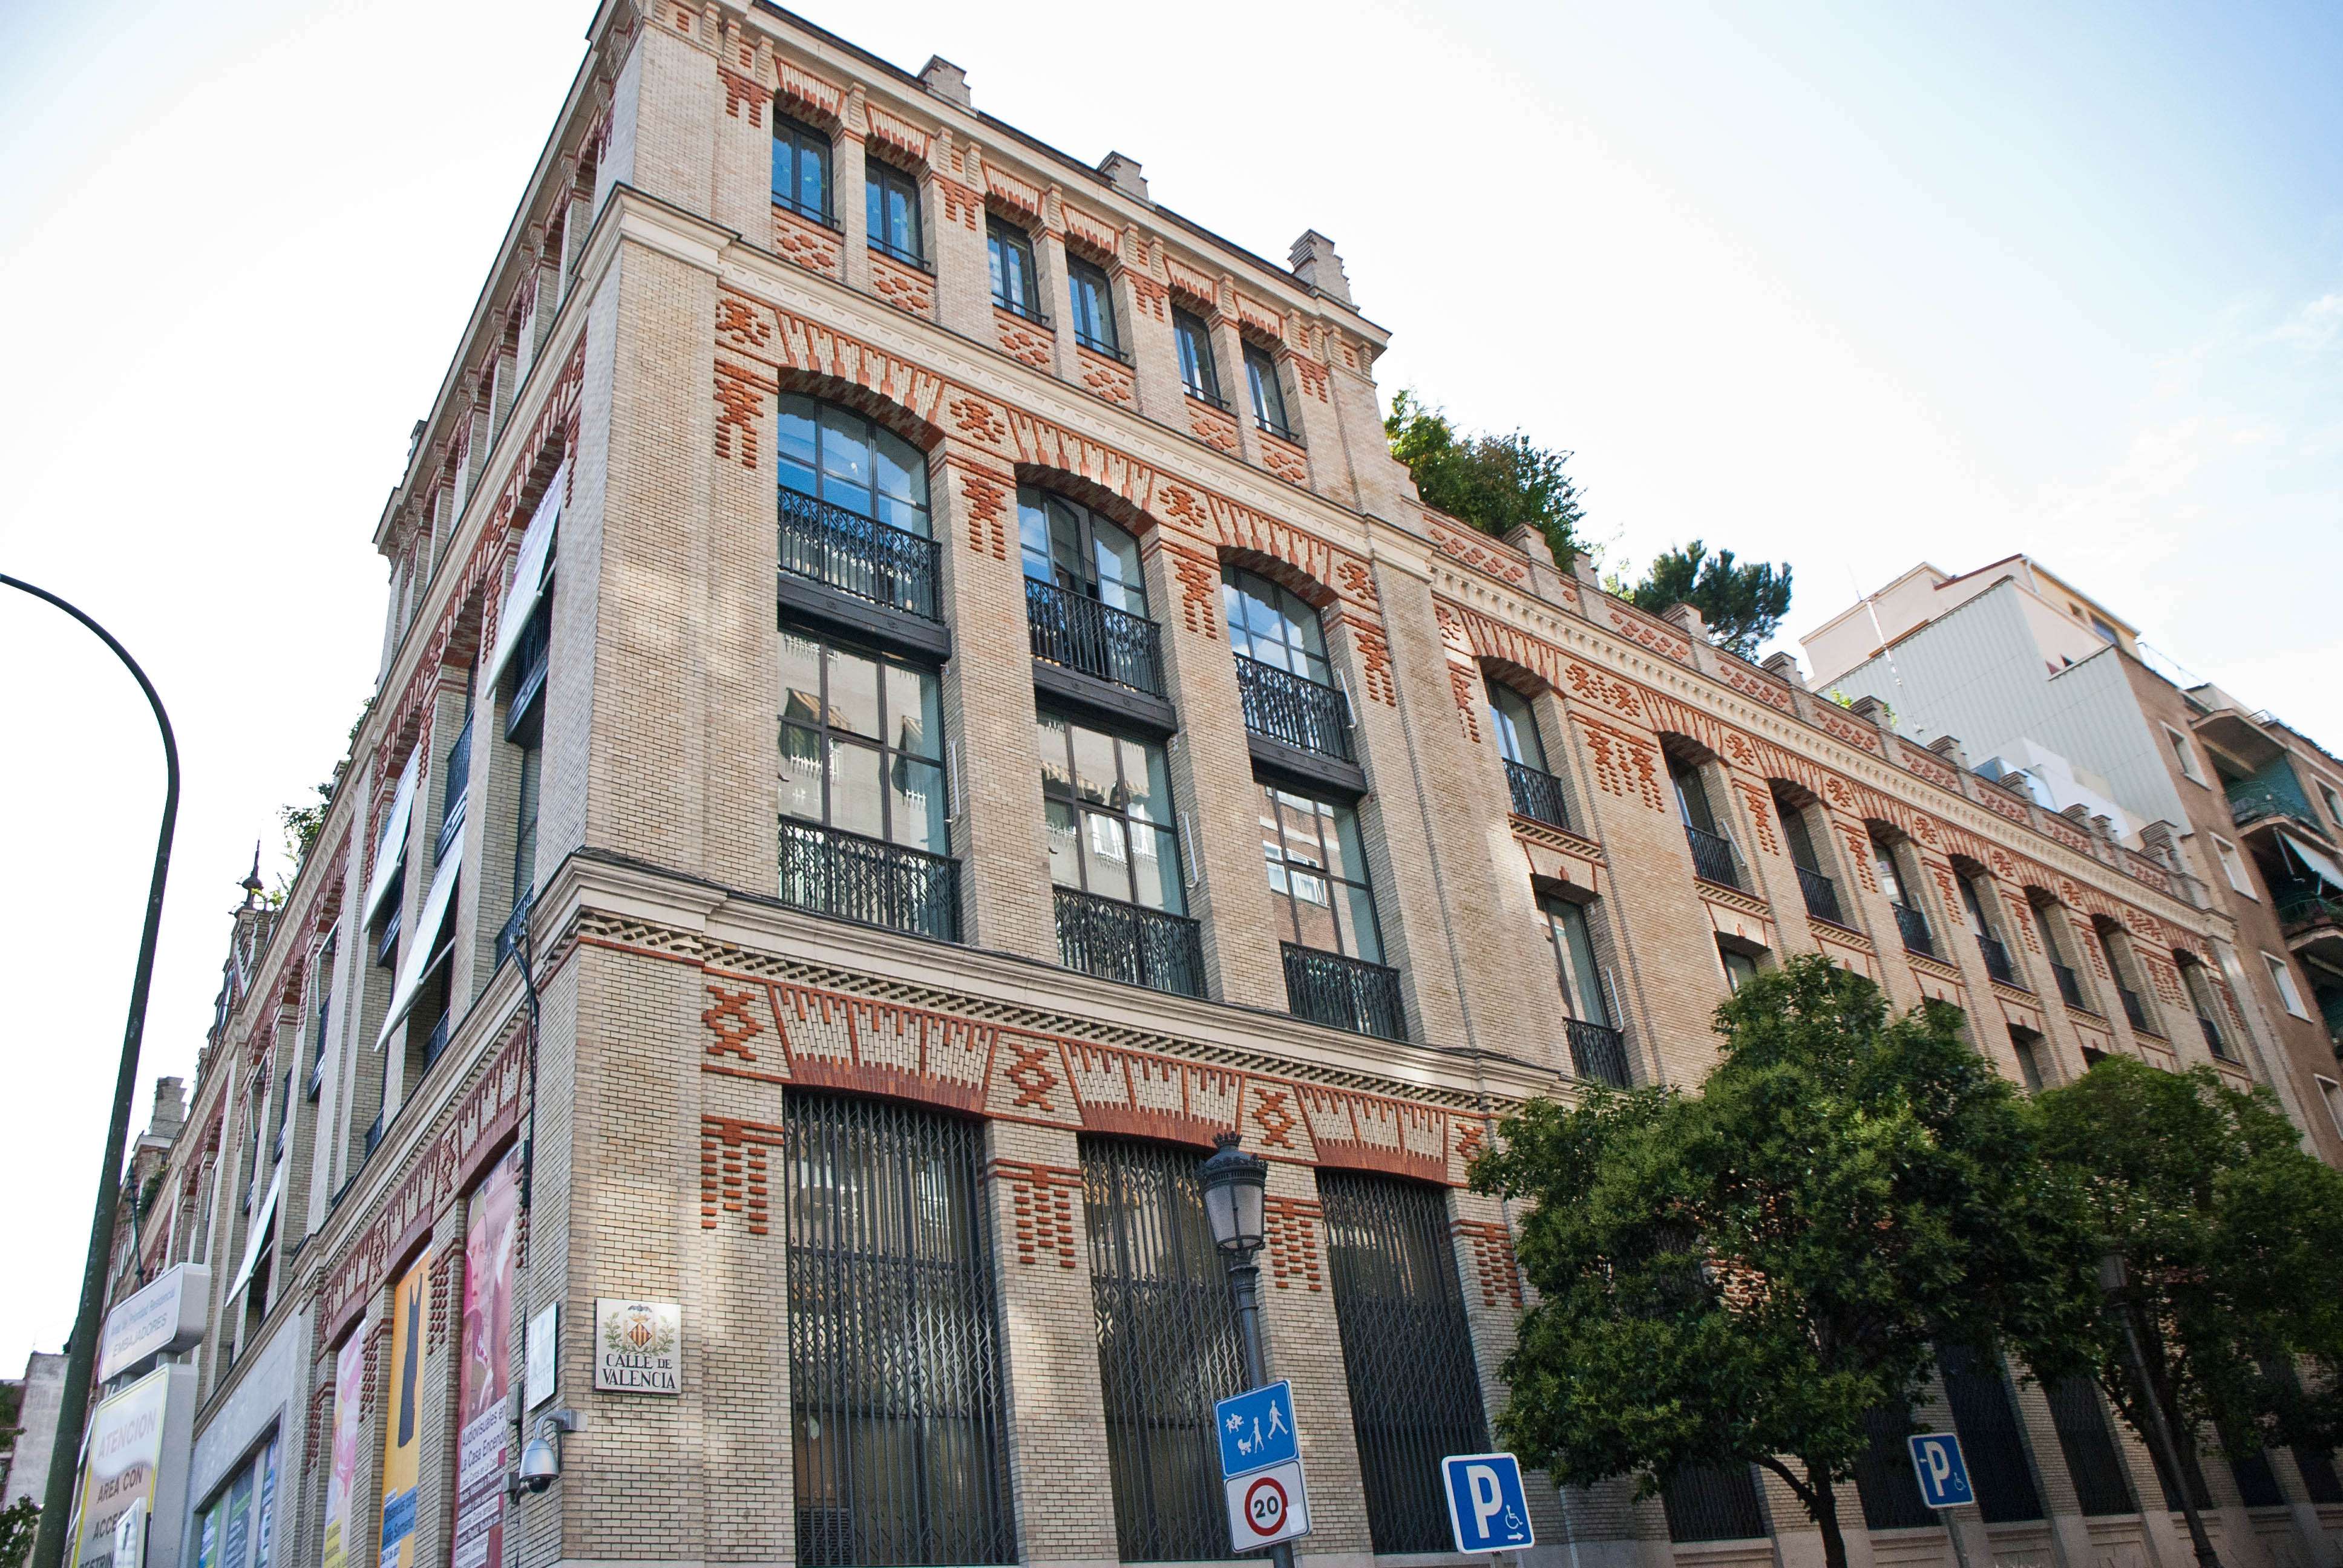 Paseos y Rutas por Madrid - Blogs of Spain - La Arganzuela, un ensanche industrial (5)